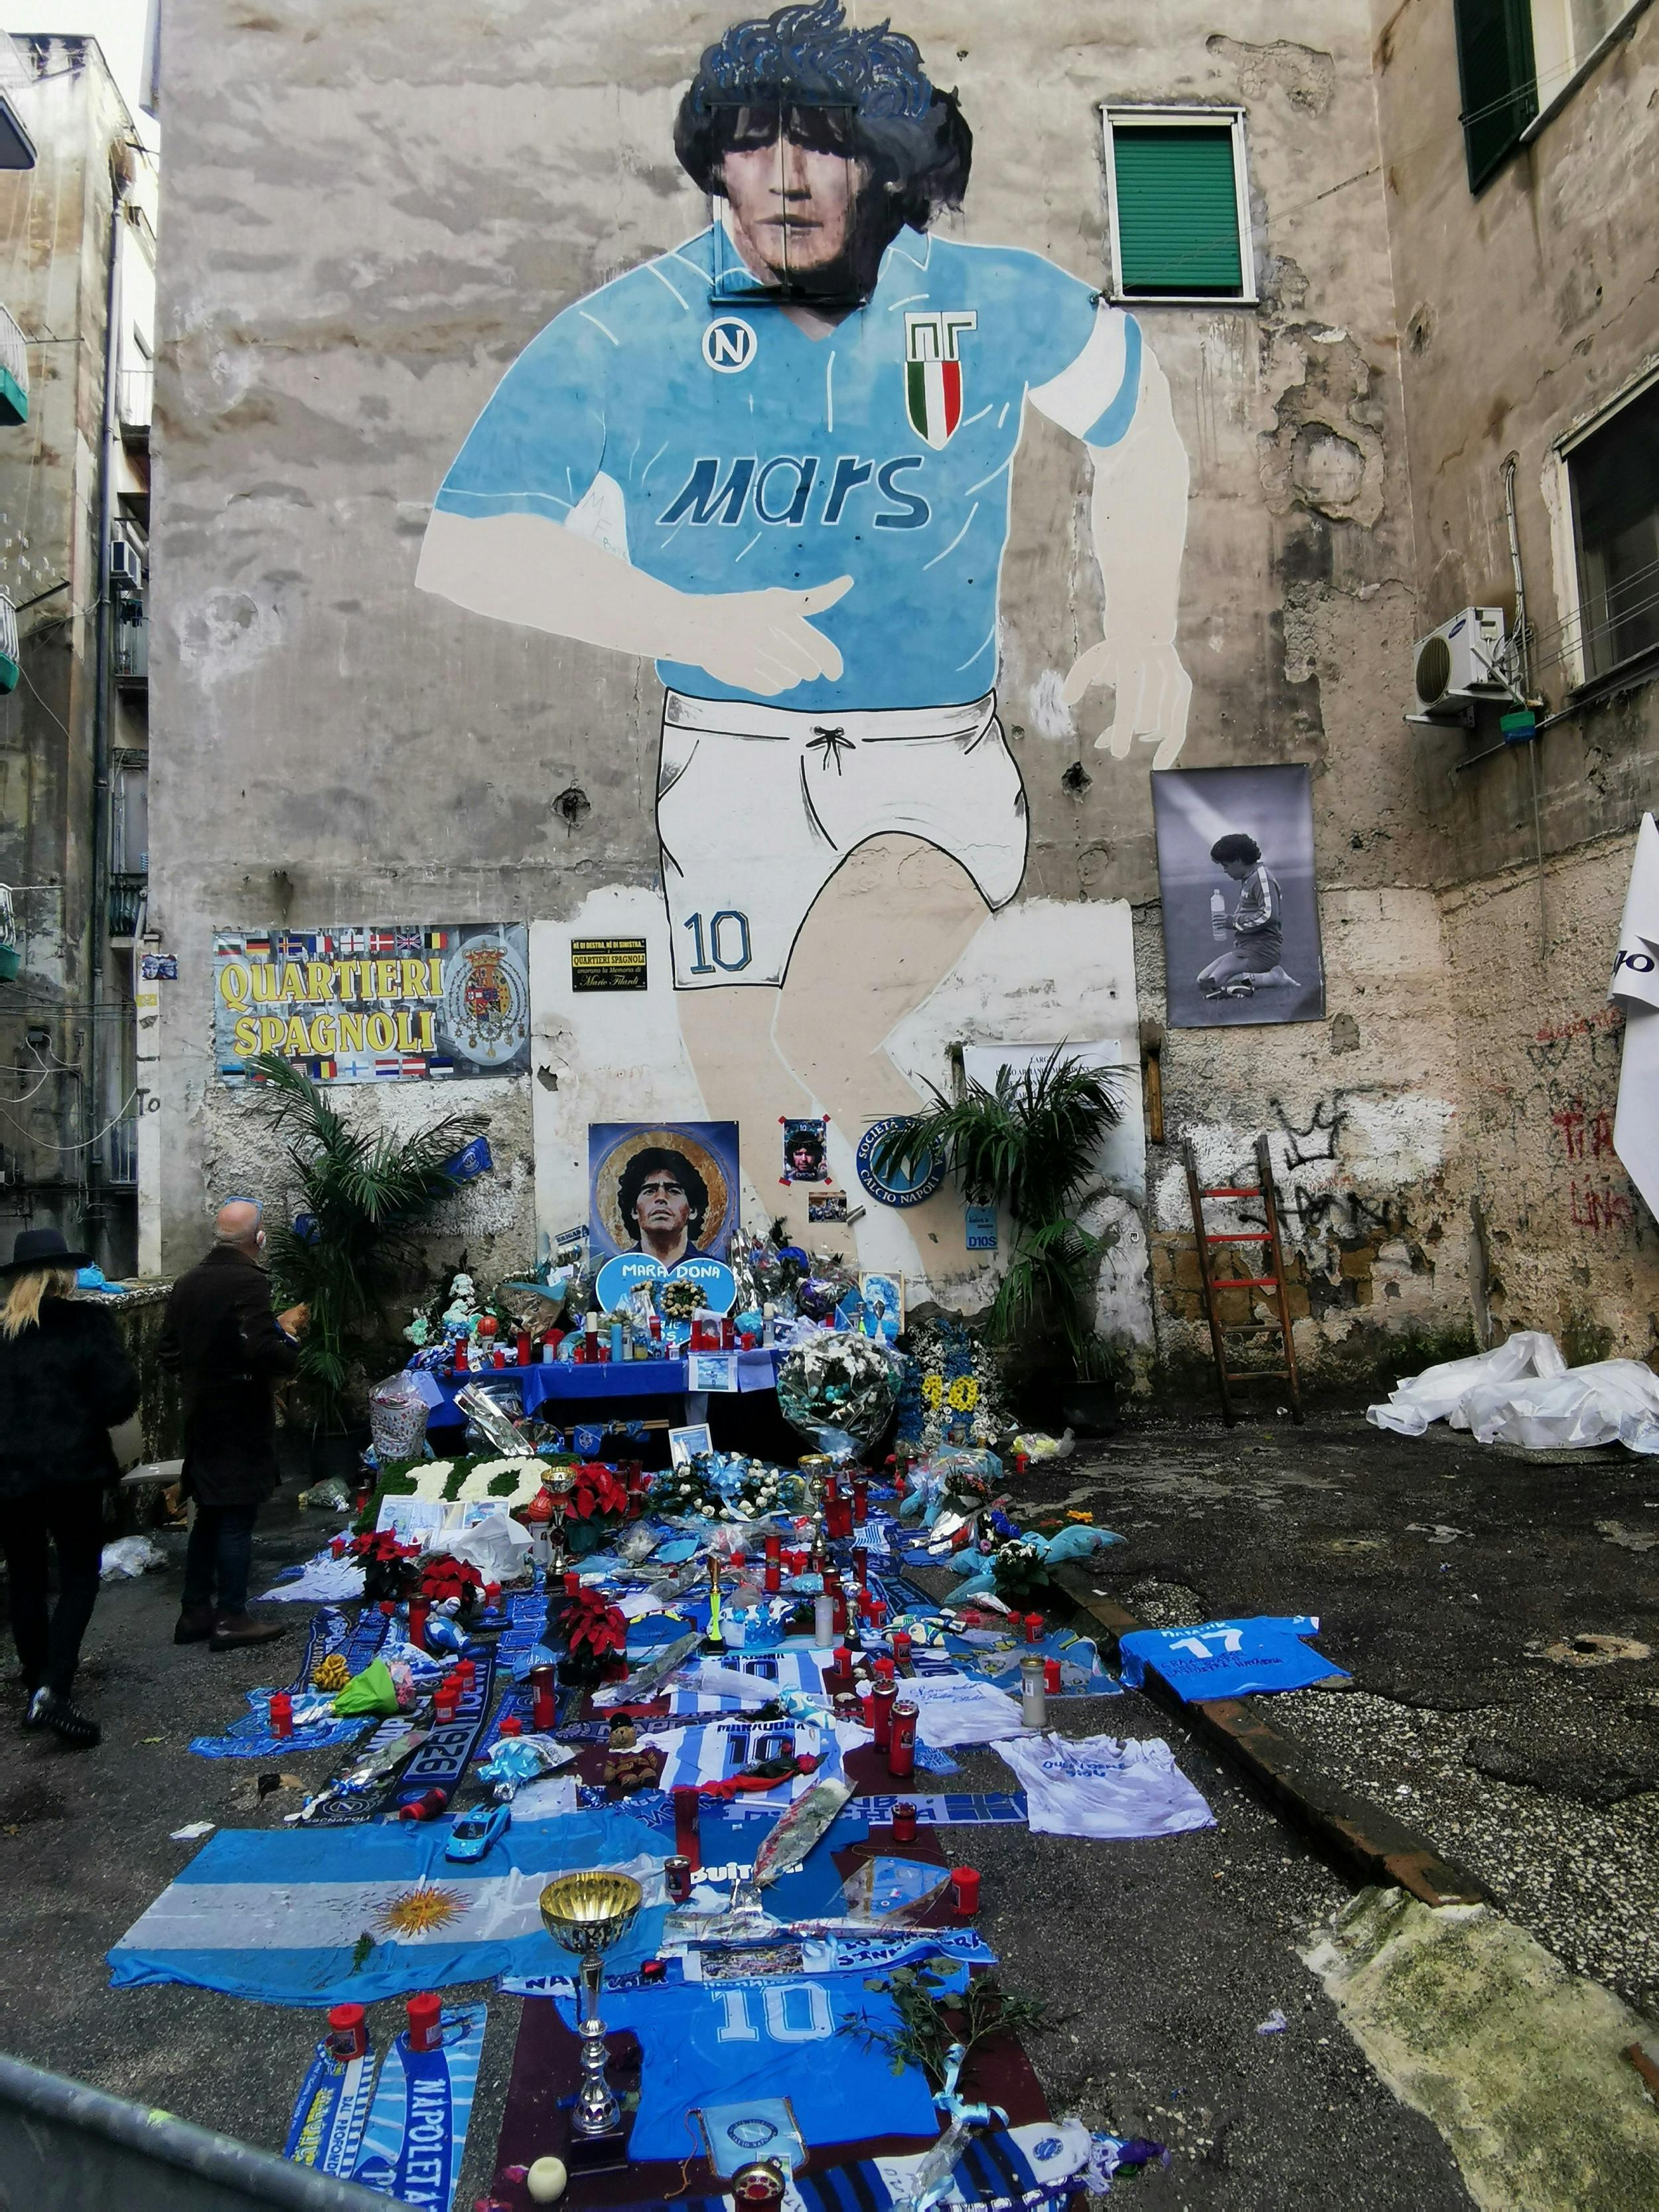 Tour del folklore e della street art di Napoli nei Quartieri Spagnoli